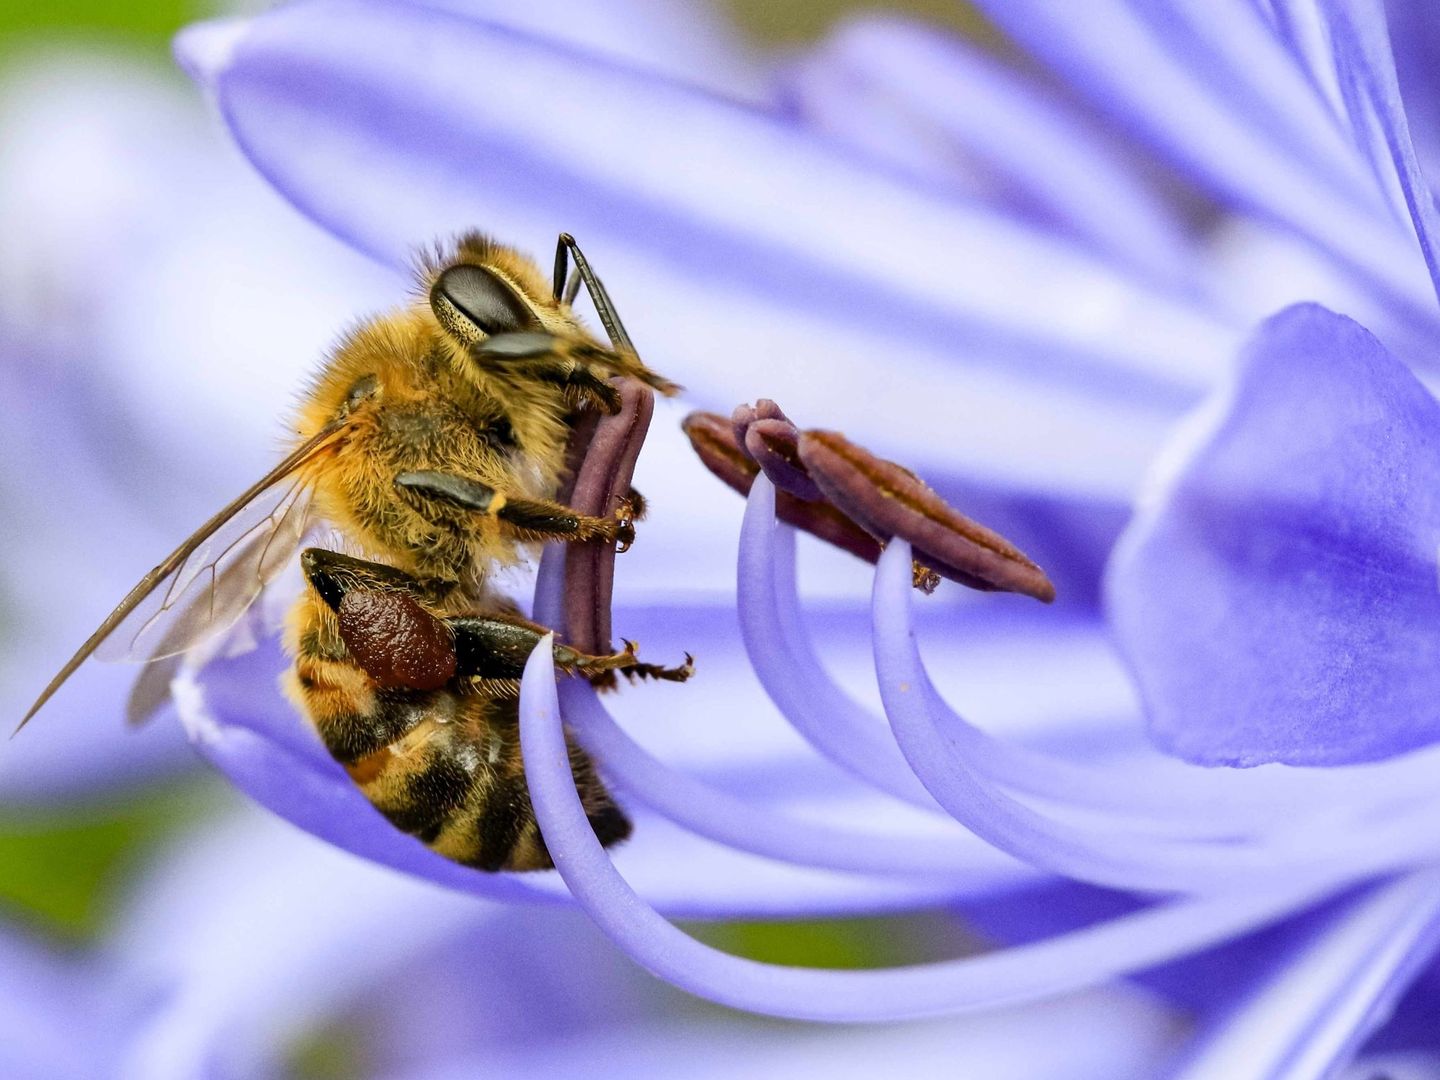 Estas sustancias químicas son peligrosas para algunos polinizadores como las abejas. EFE